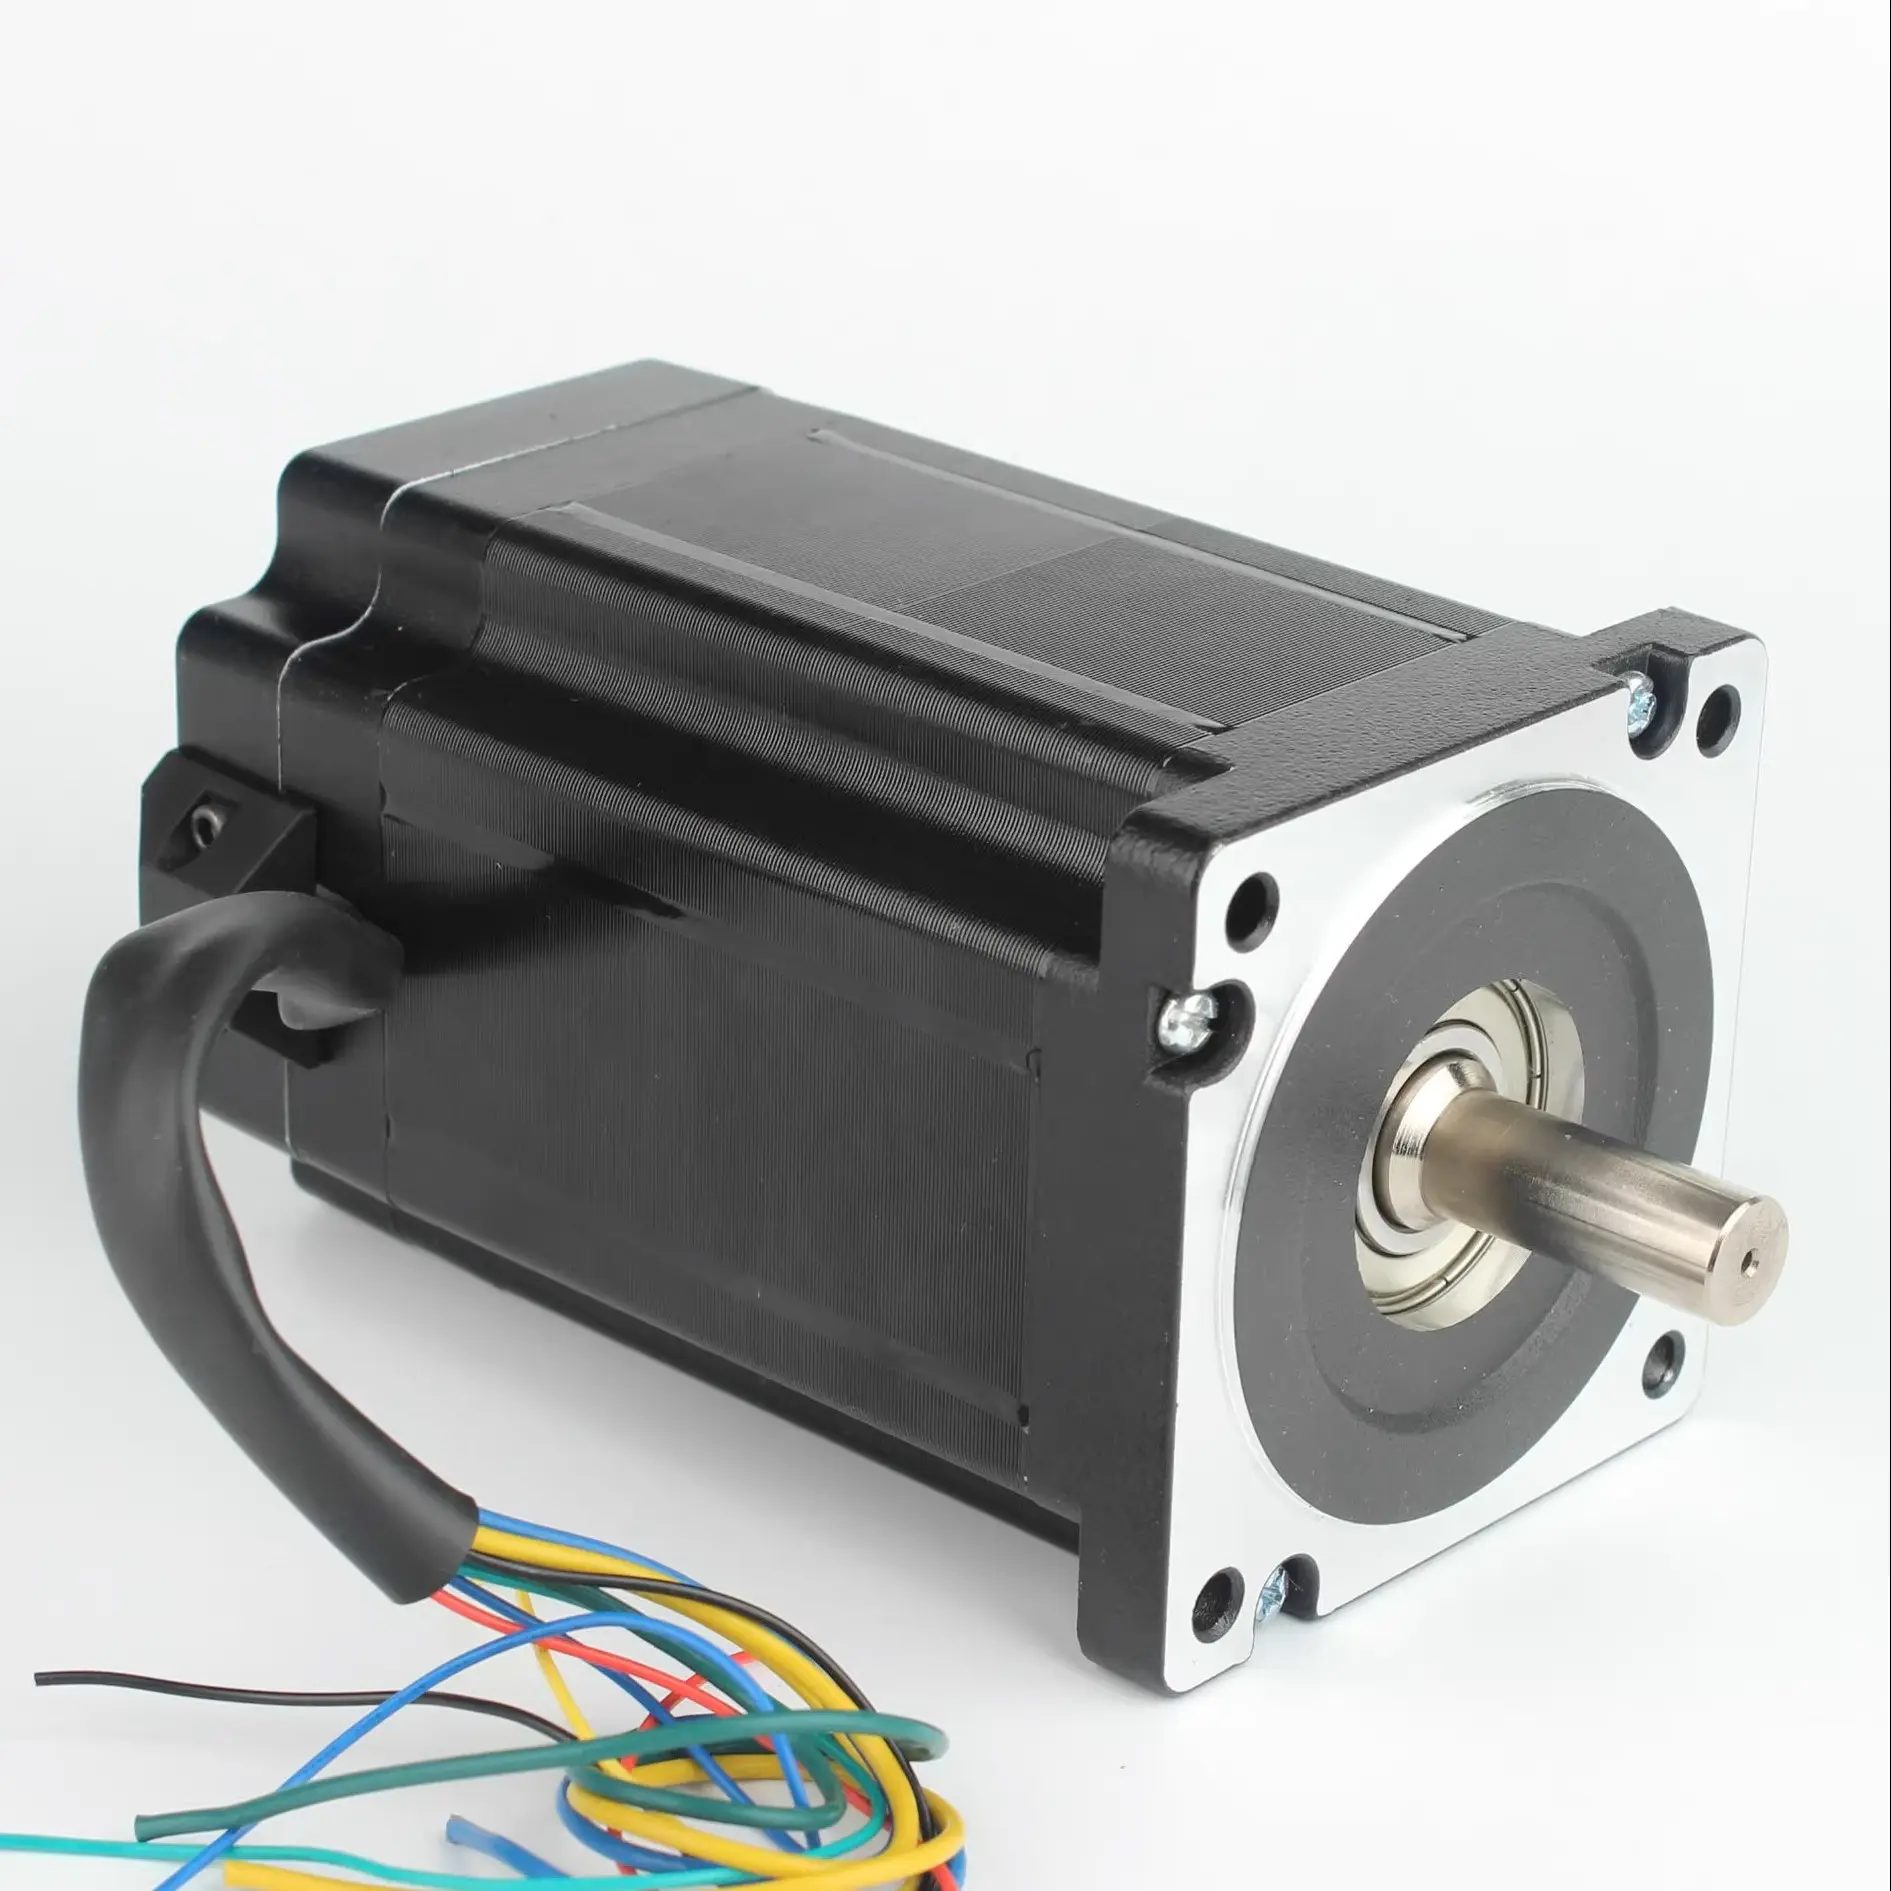 industrielle automatisation gleichstrommotoren für elektrisch 310 v 1 kw 110 mm BLDC 48 v bürstenloser motor permanentmagnet-motor bürstenlos 2 kw